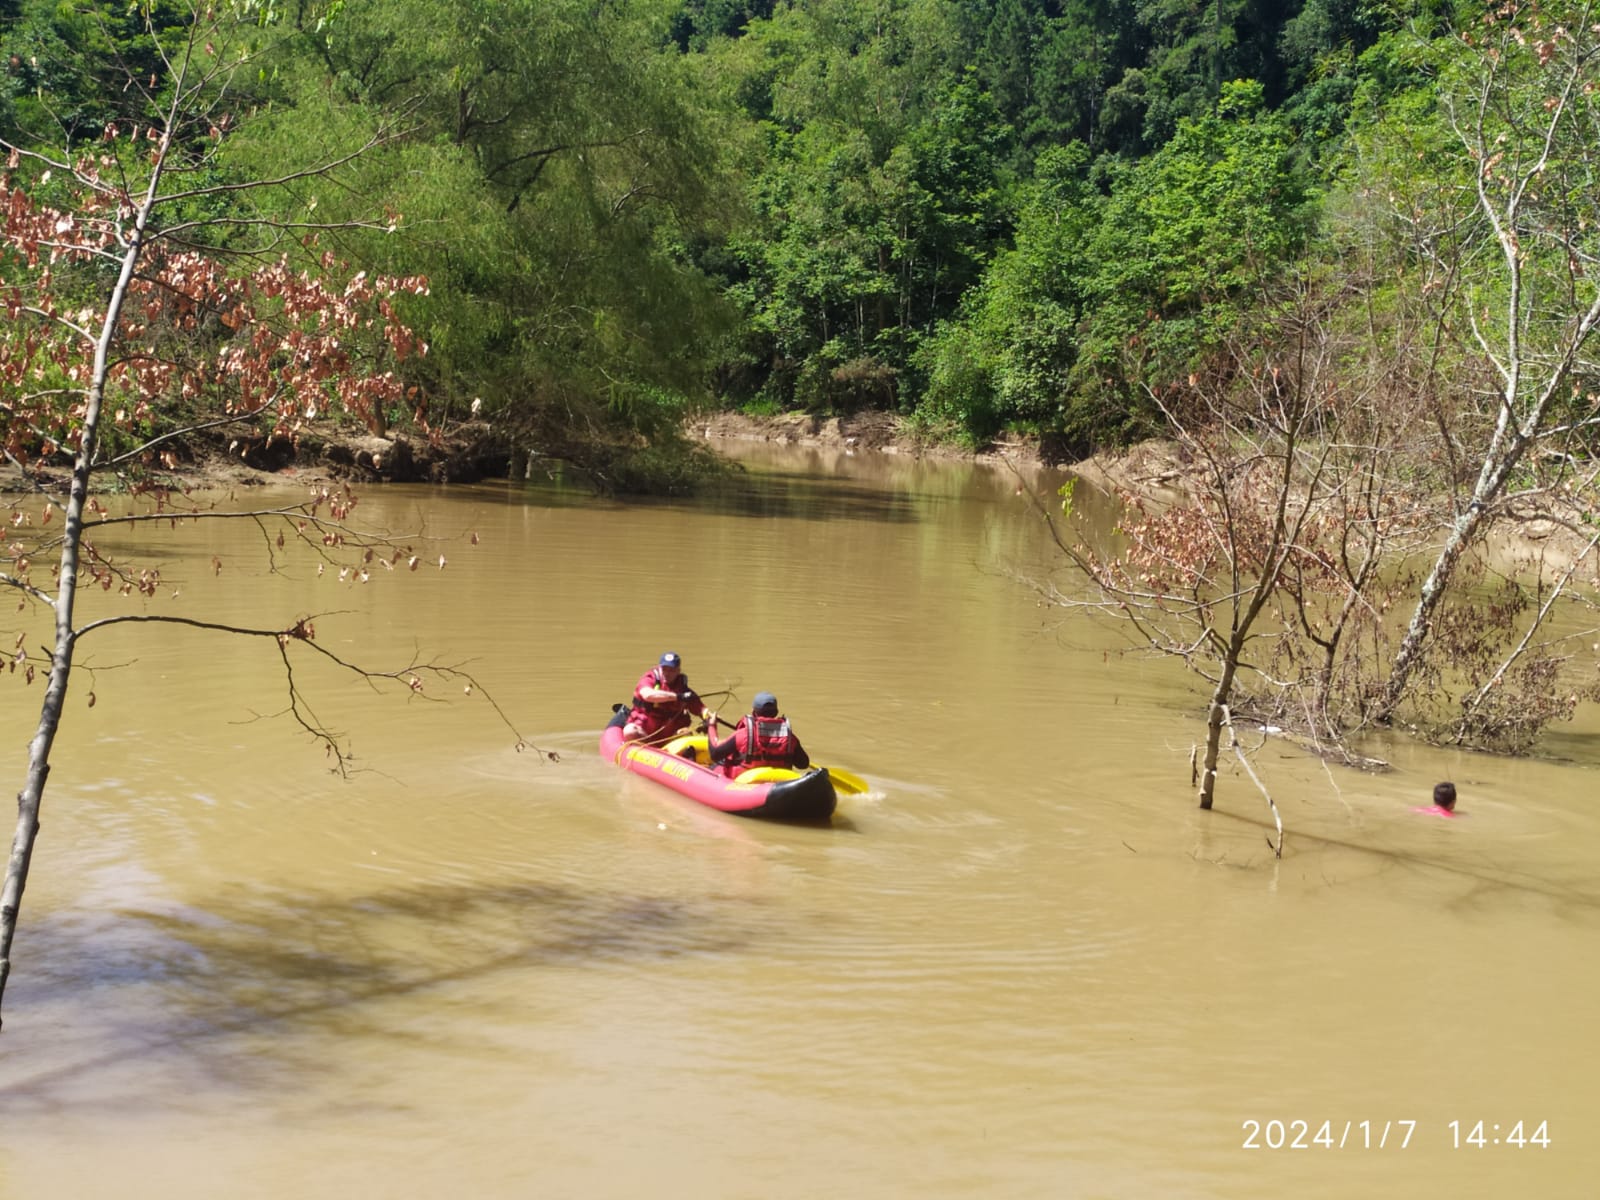 Adolescente de 11 anos se afoga e desaparece no rio em Ituporanga